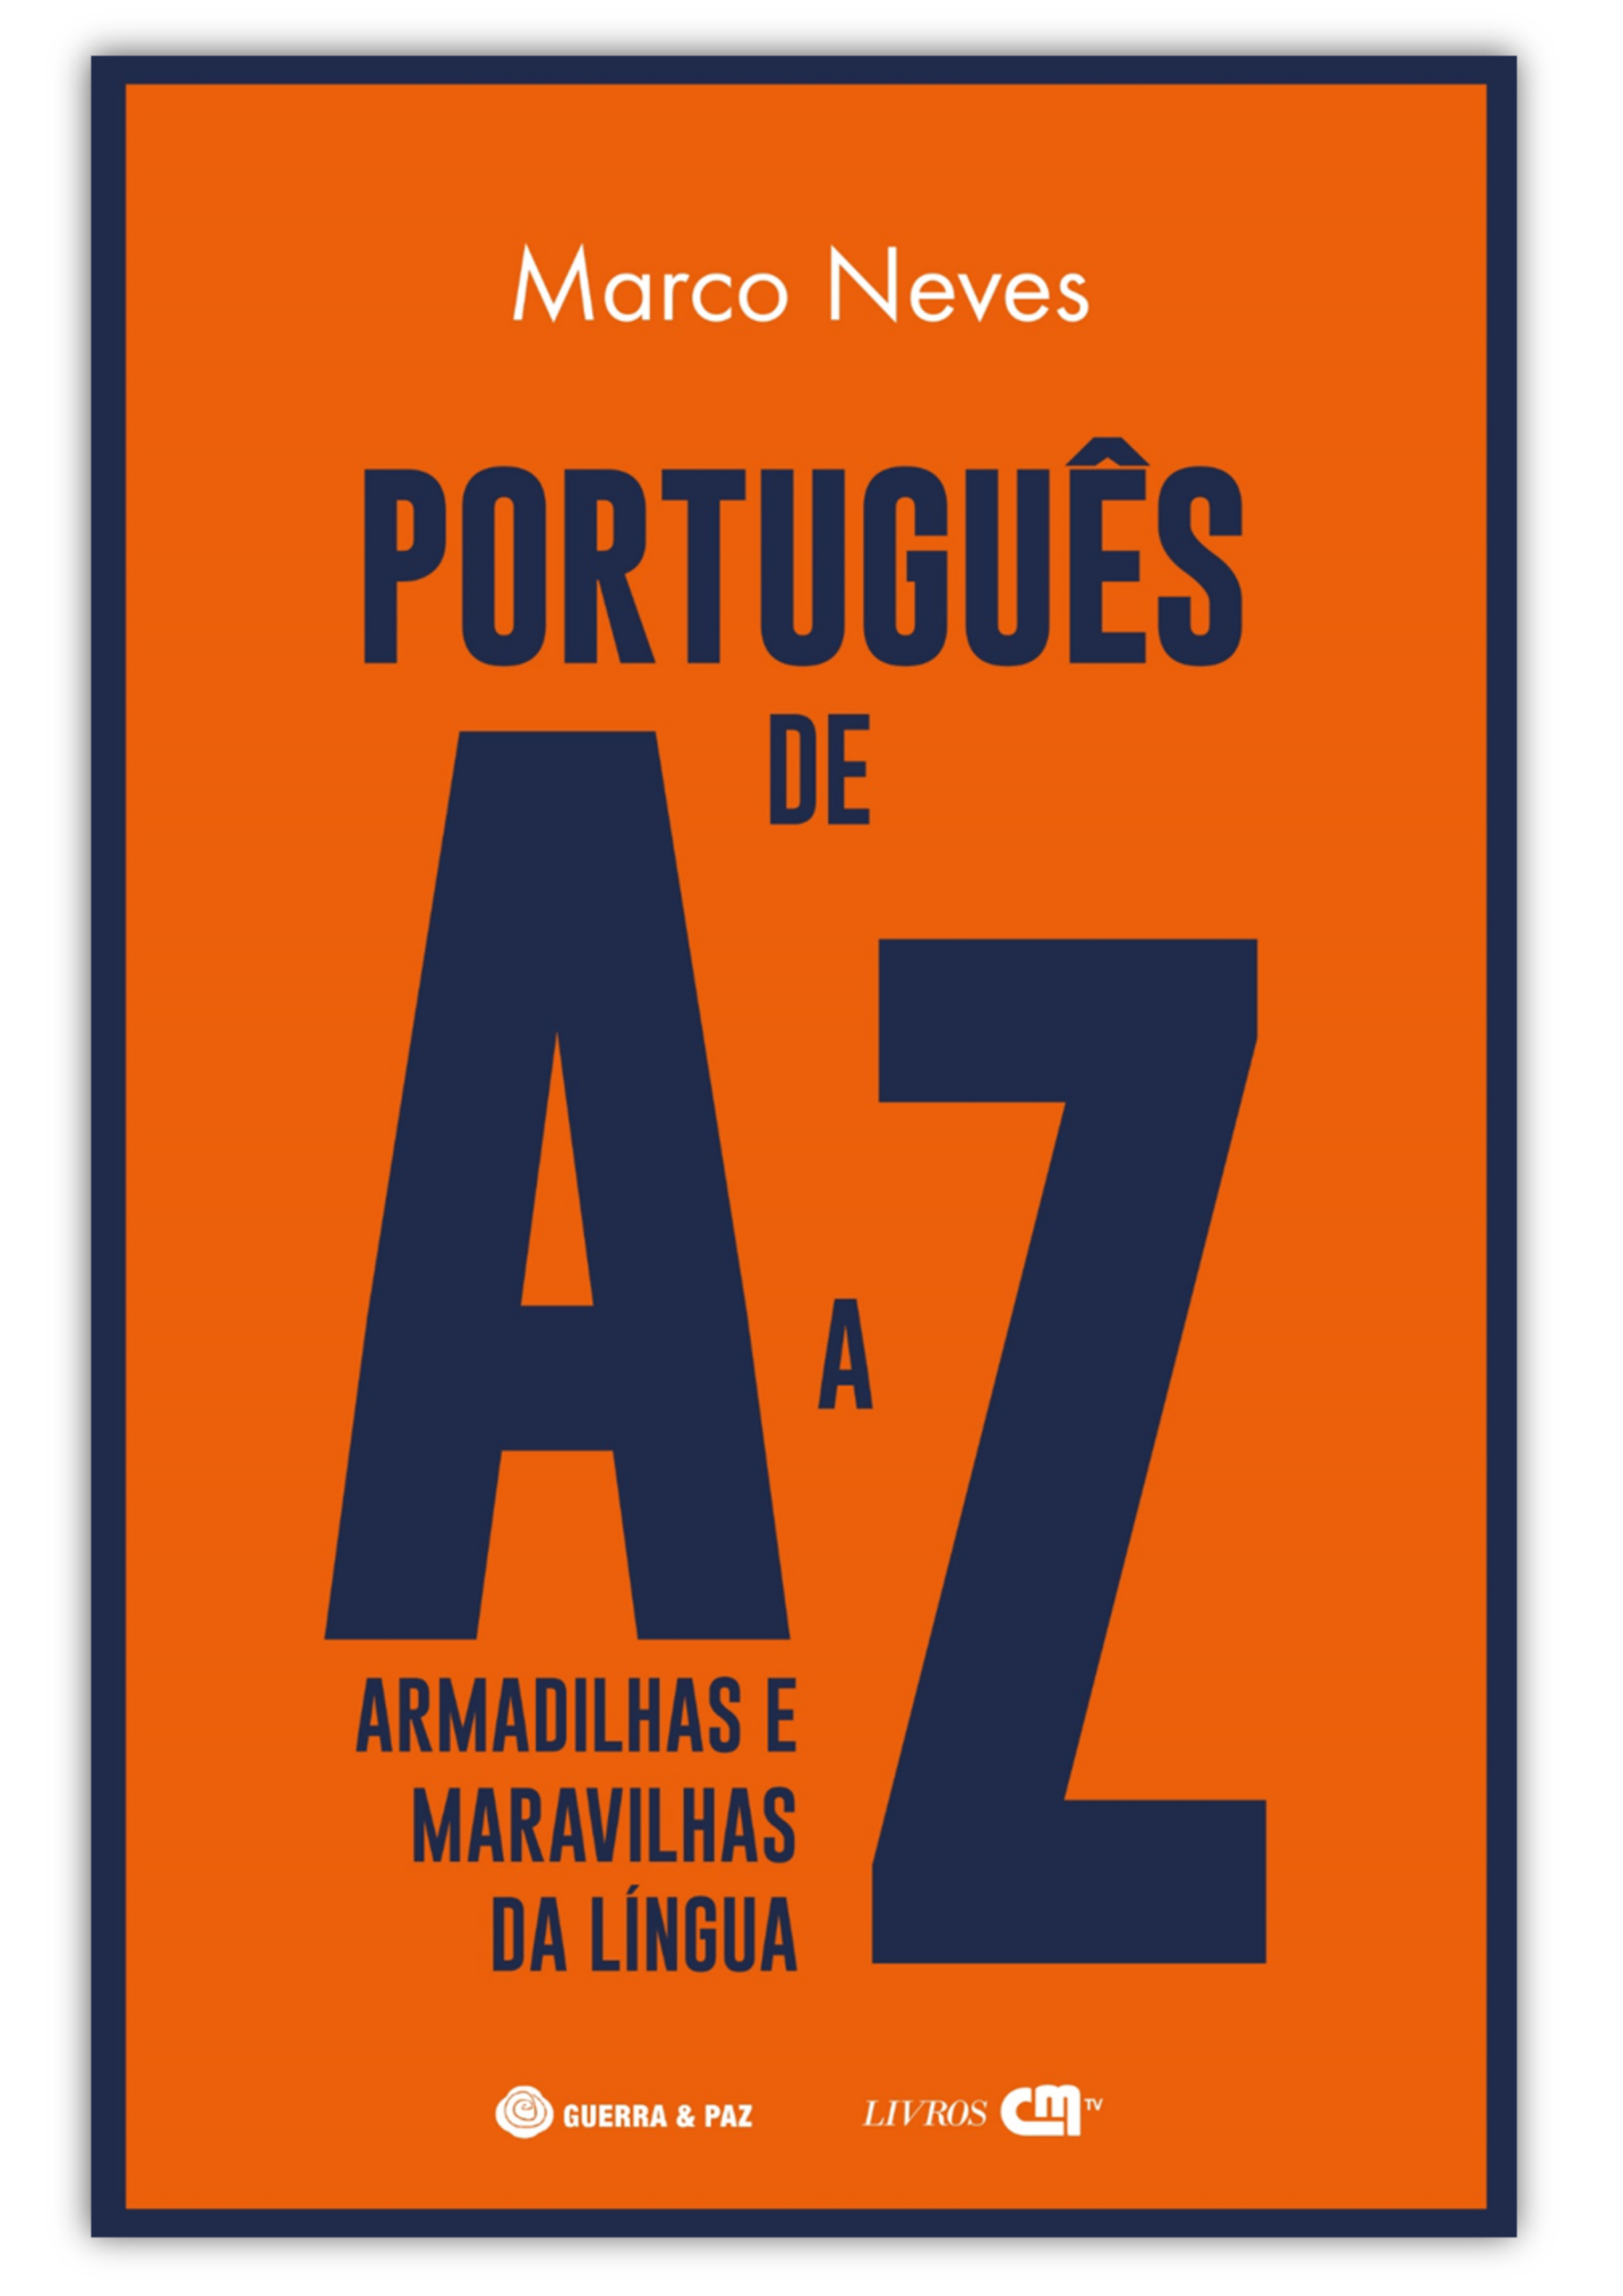 Pré-publicação de “Português de A a Z”. Dizer deslargar está